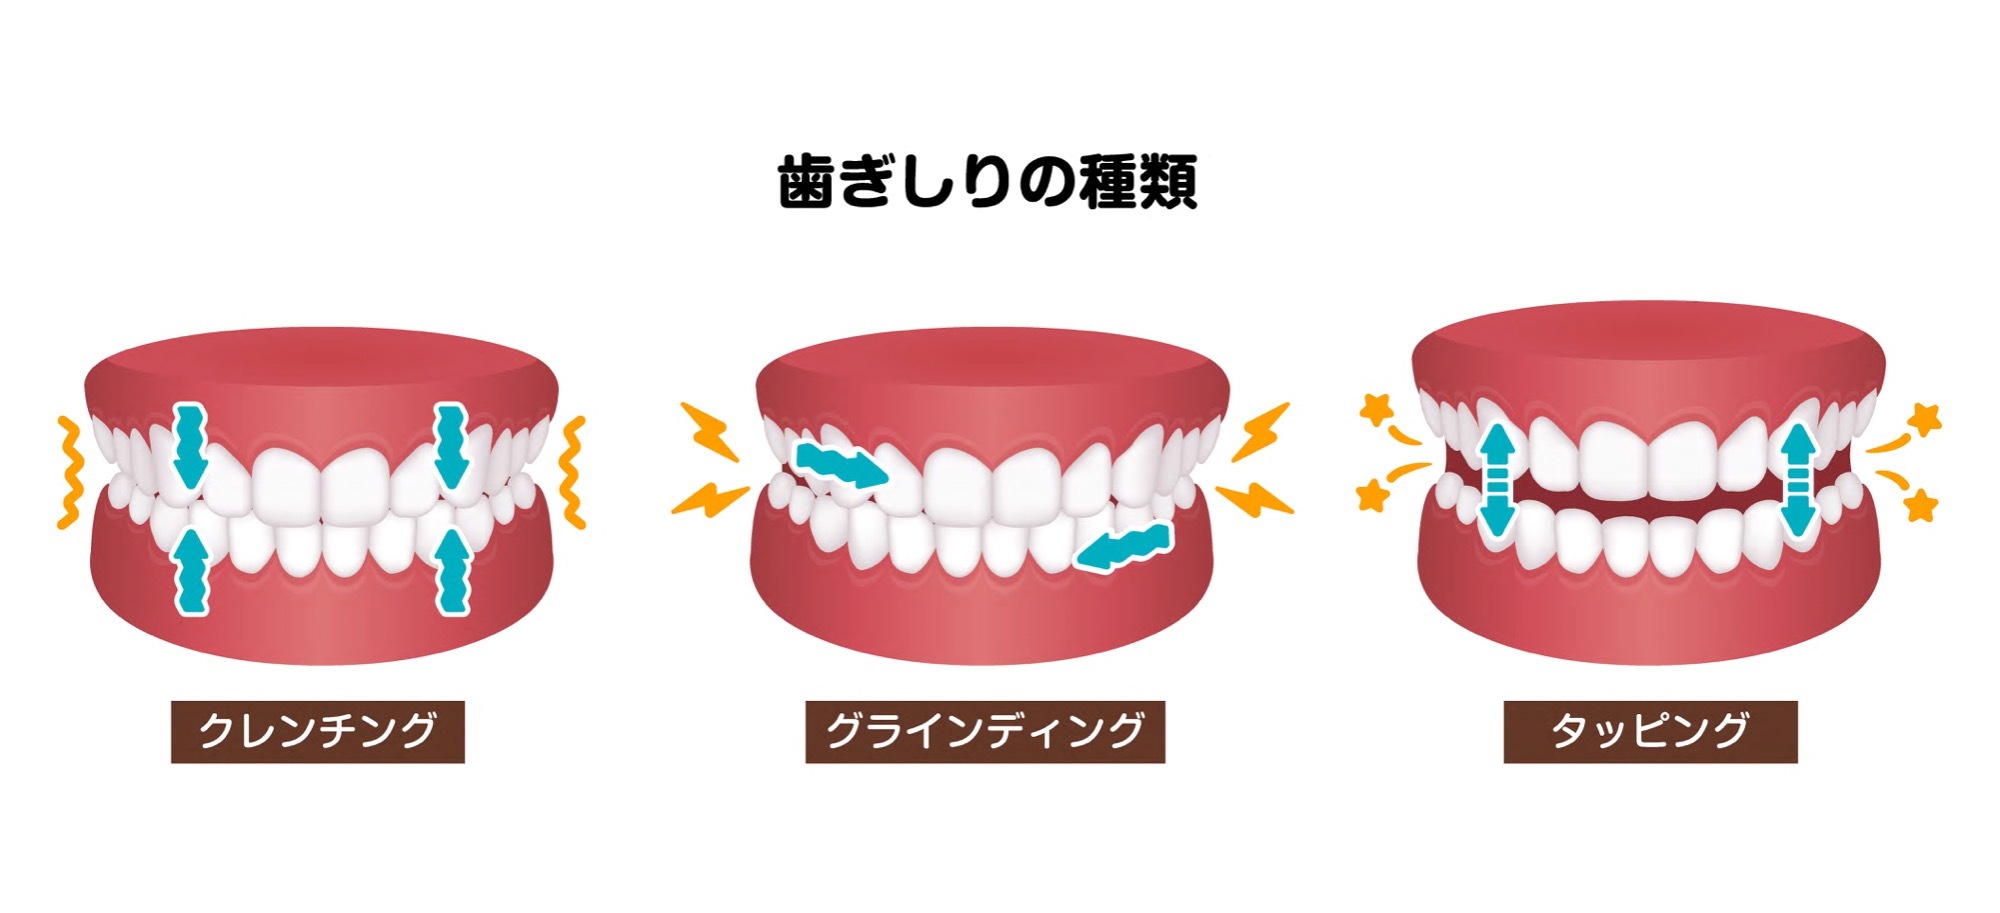 異なる歯ぎしりのタイプ